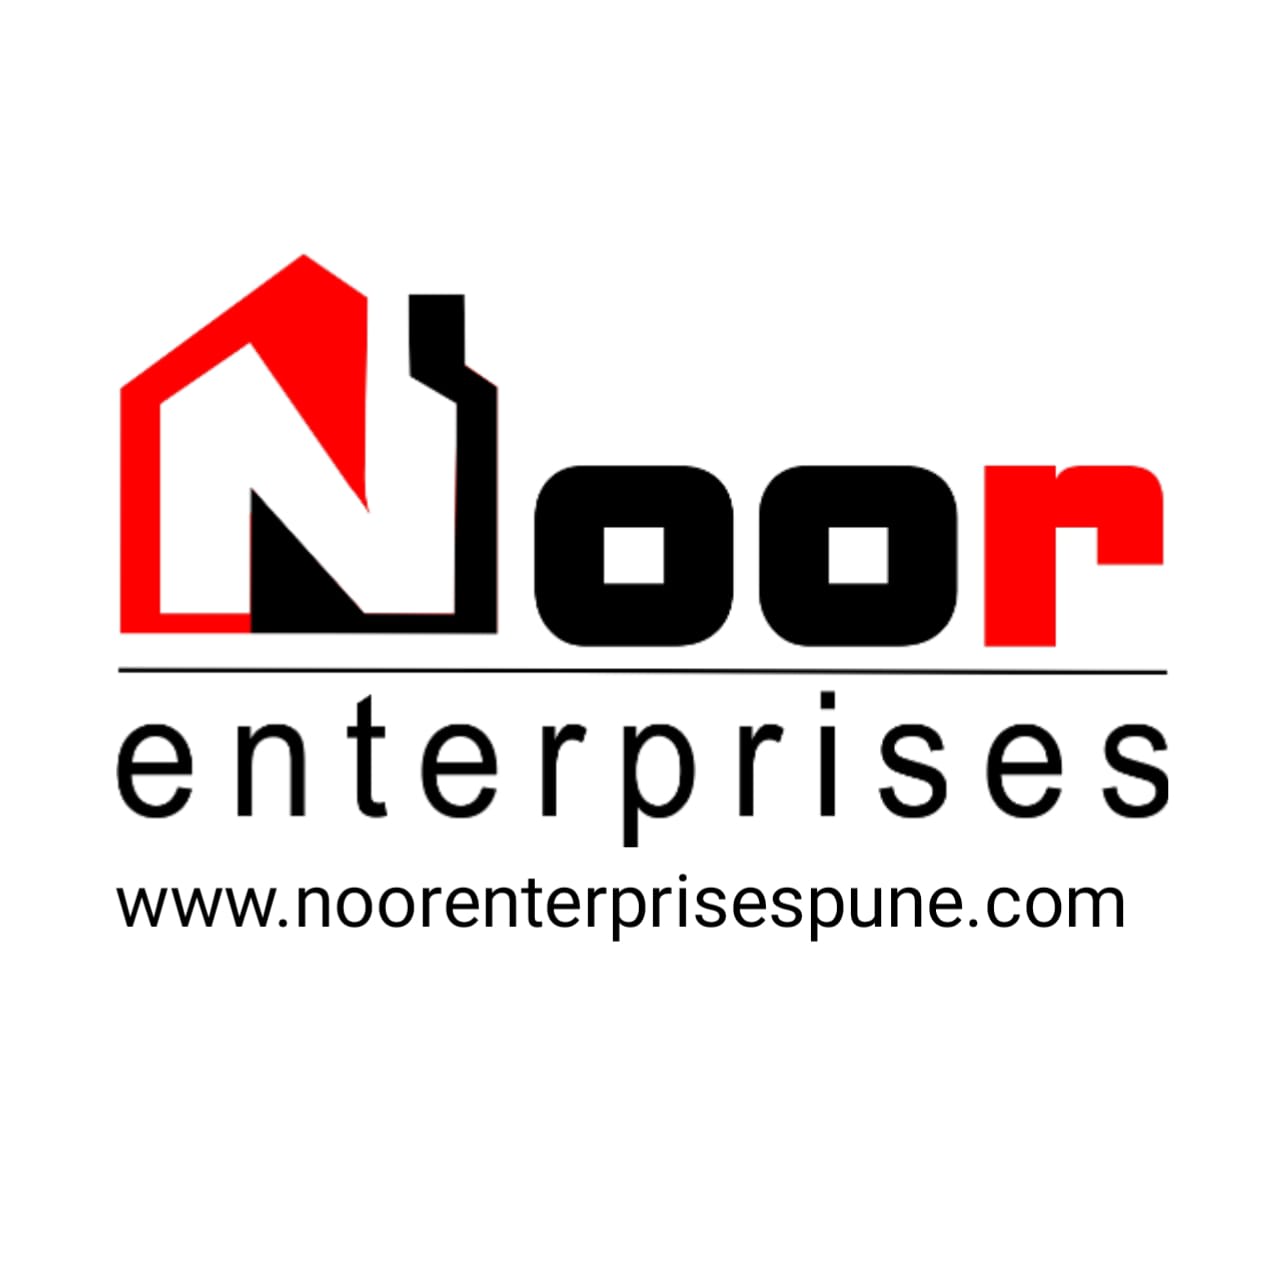 Noor Enterprises Pune